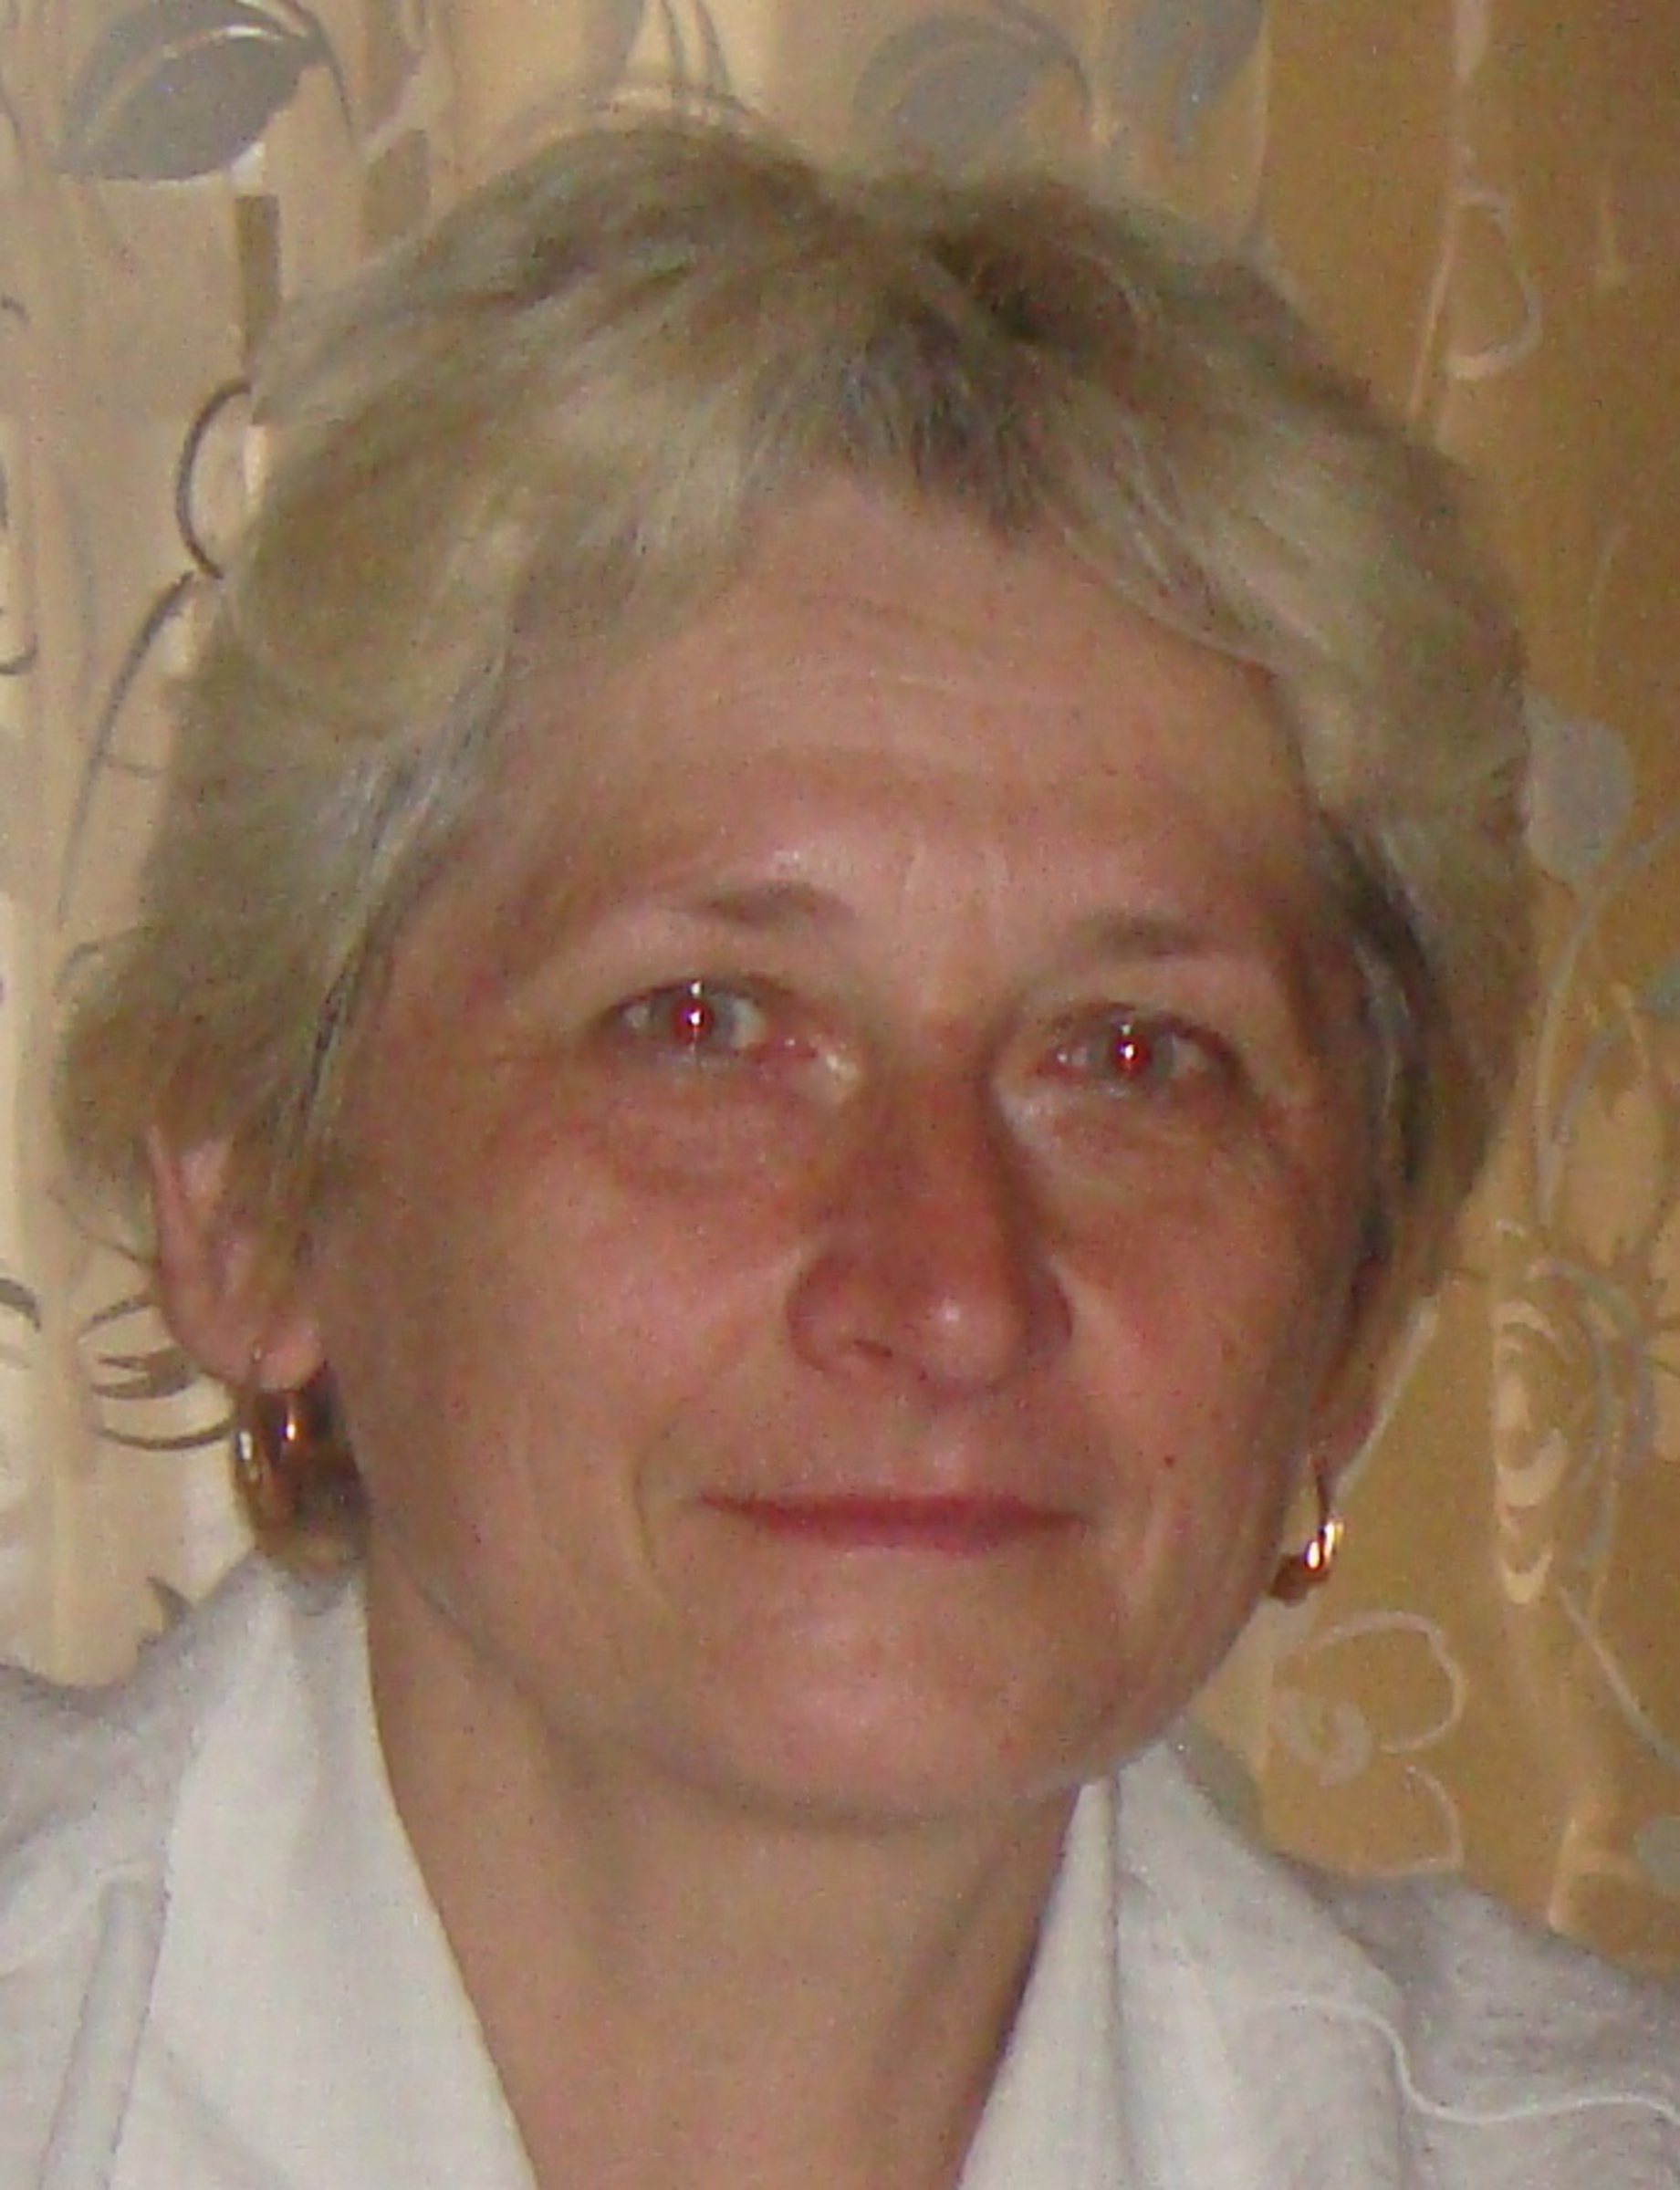 Jelena Podhájská-Jarmoljuk on 16 July, 2012